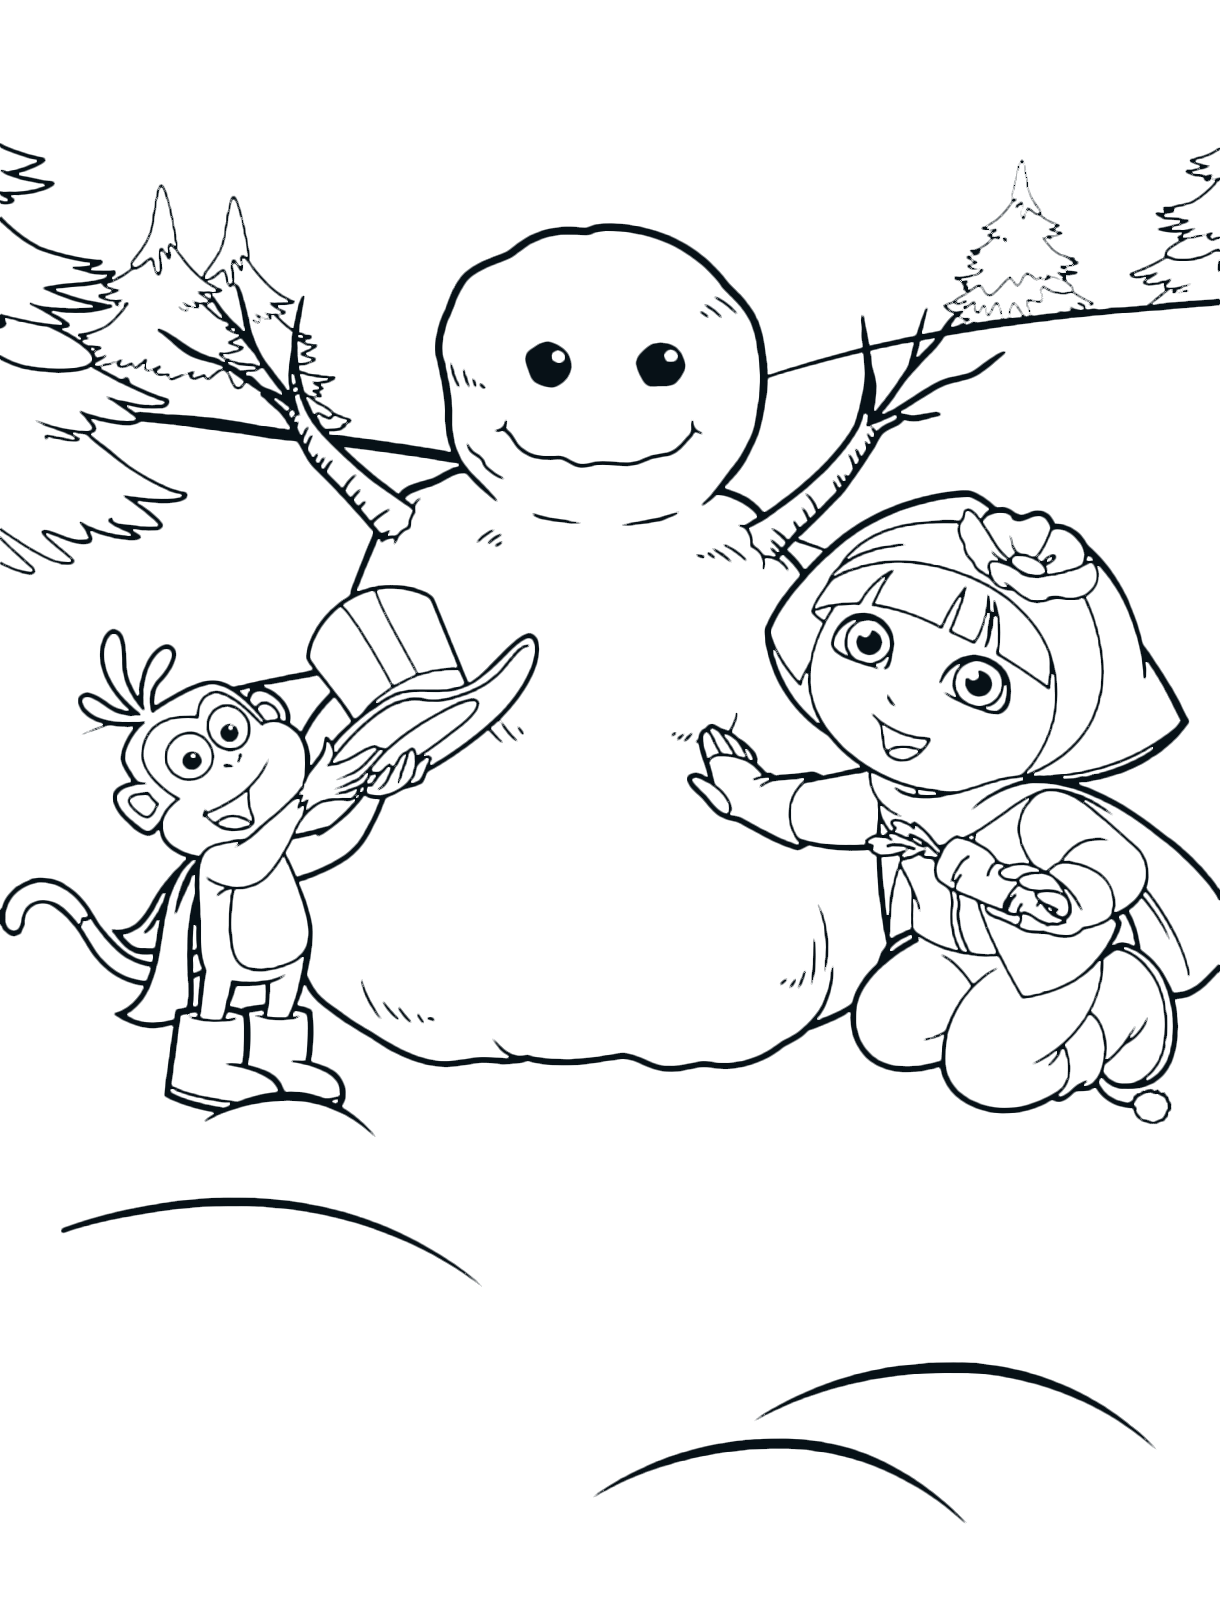 Dora l'esploratrice - Dora l'esploratrice e Boots realizzano un pupazzo di neve